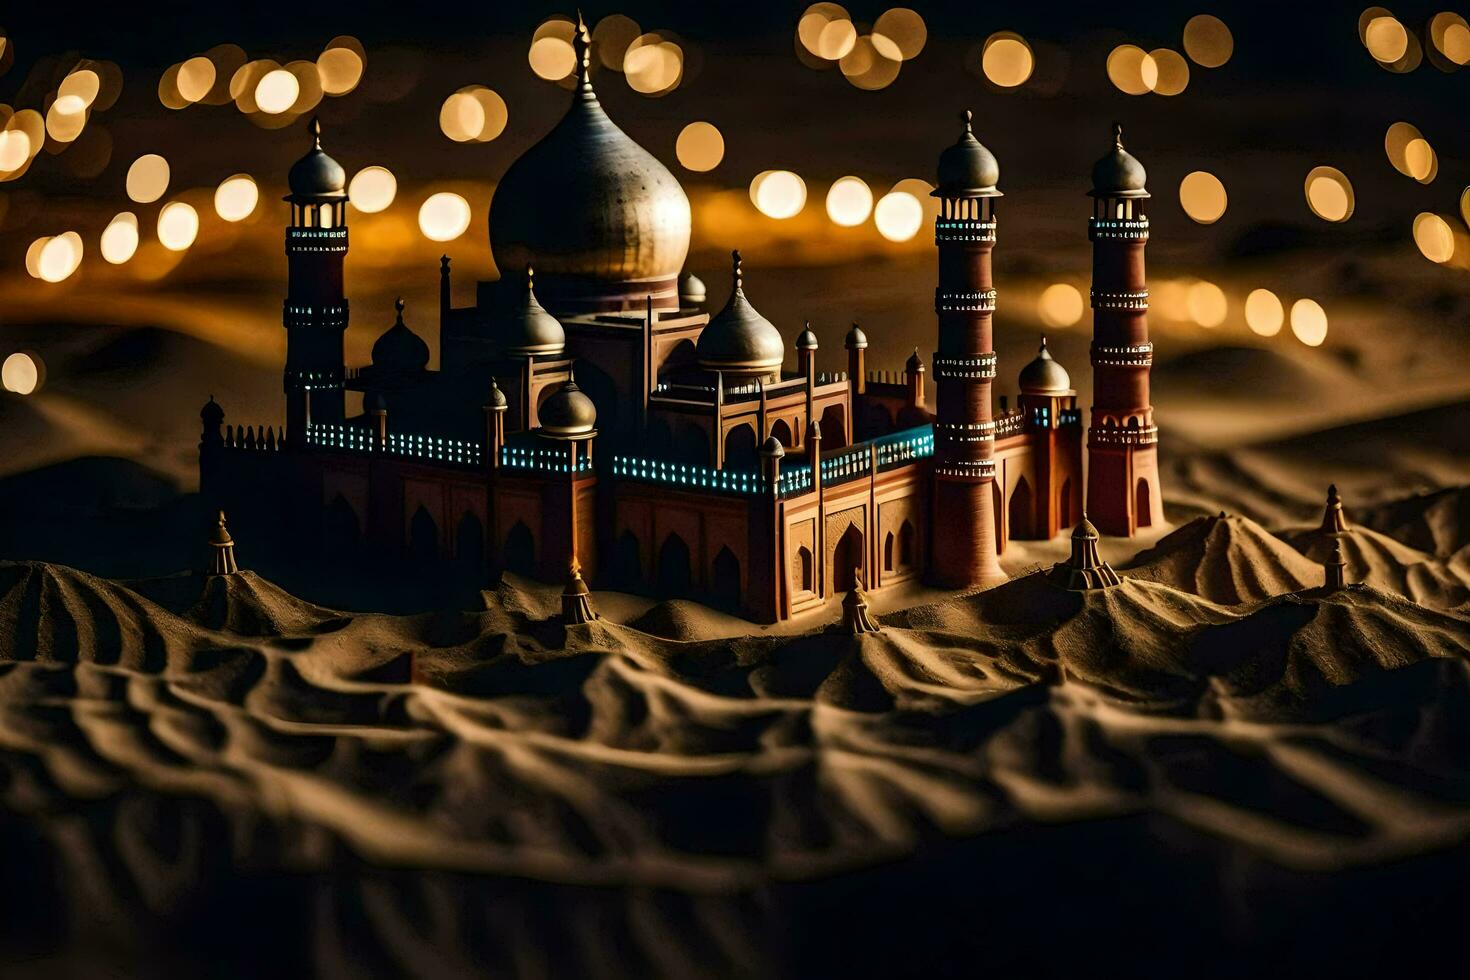 un modelo de un mezquita en el Desierto a noche. generado por ai foto